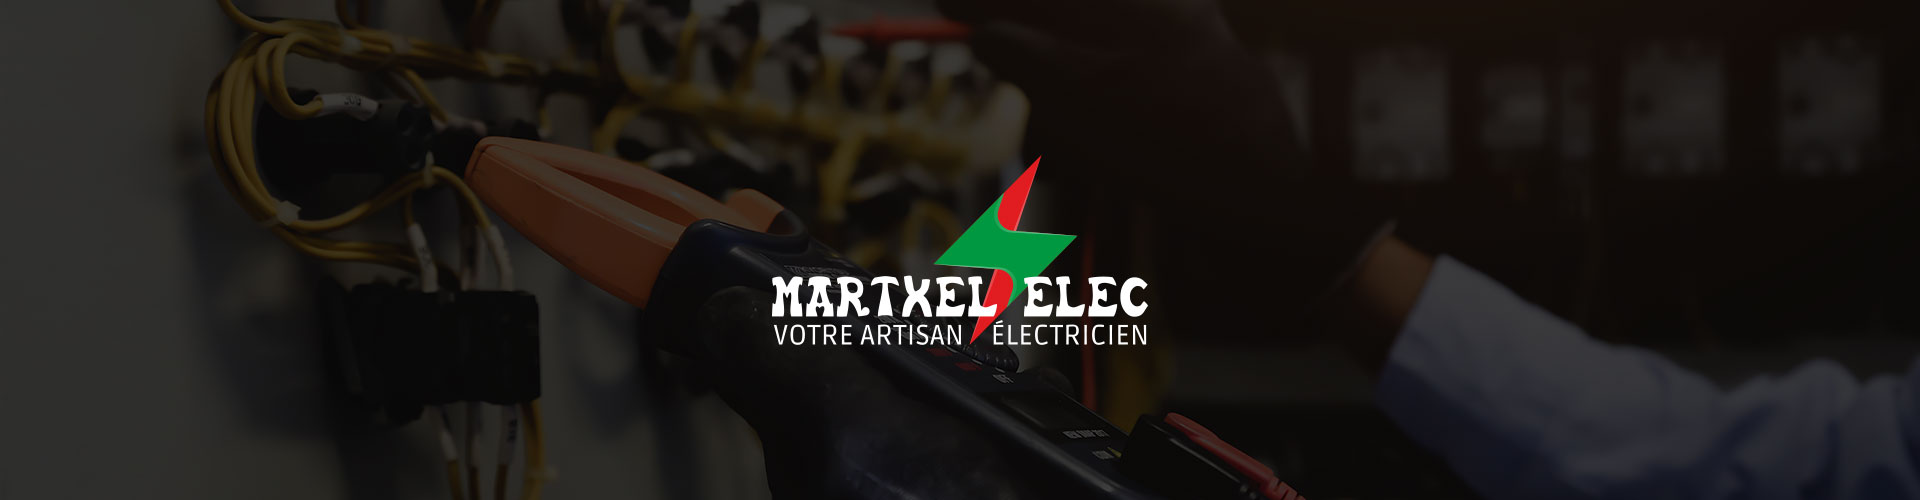 martxel-elec-contact